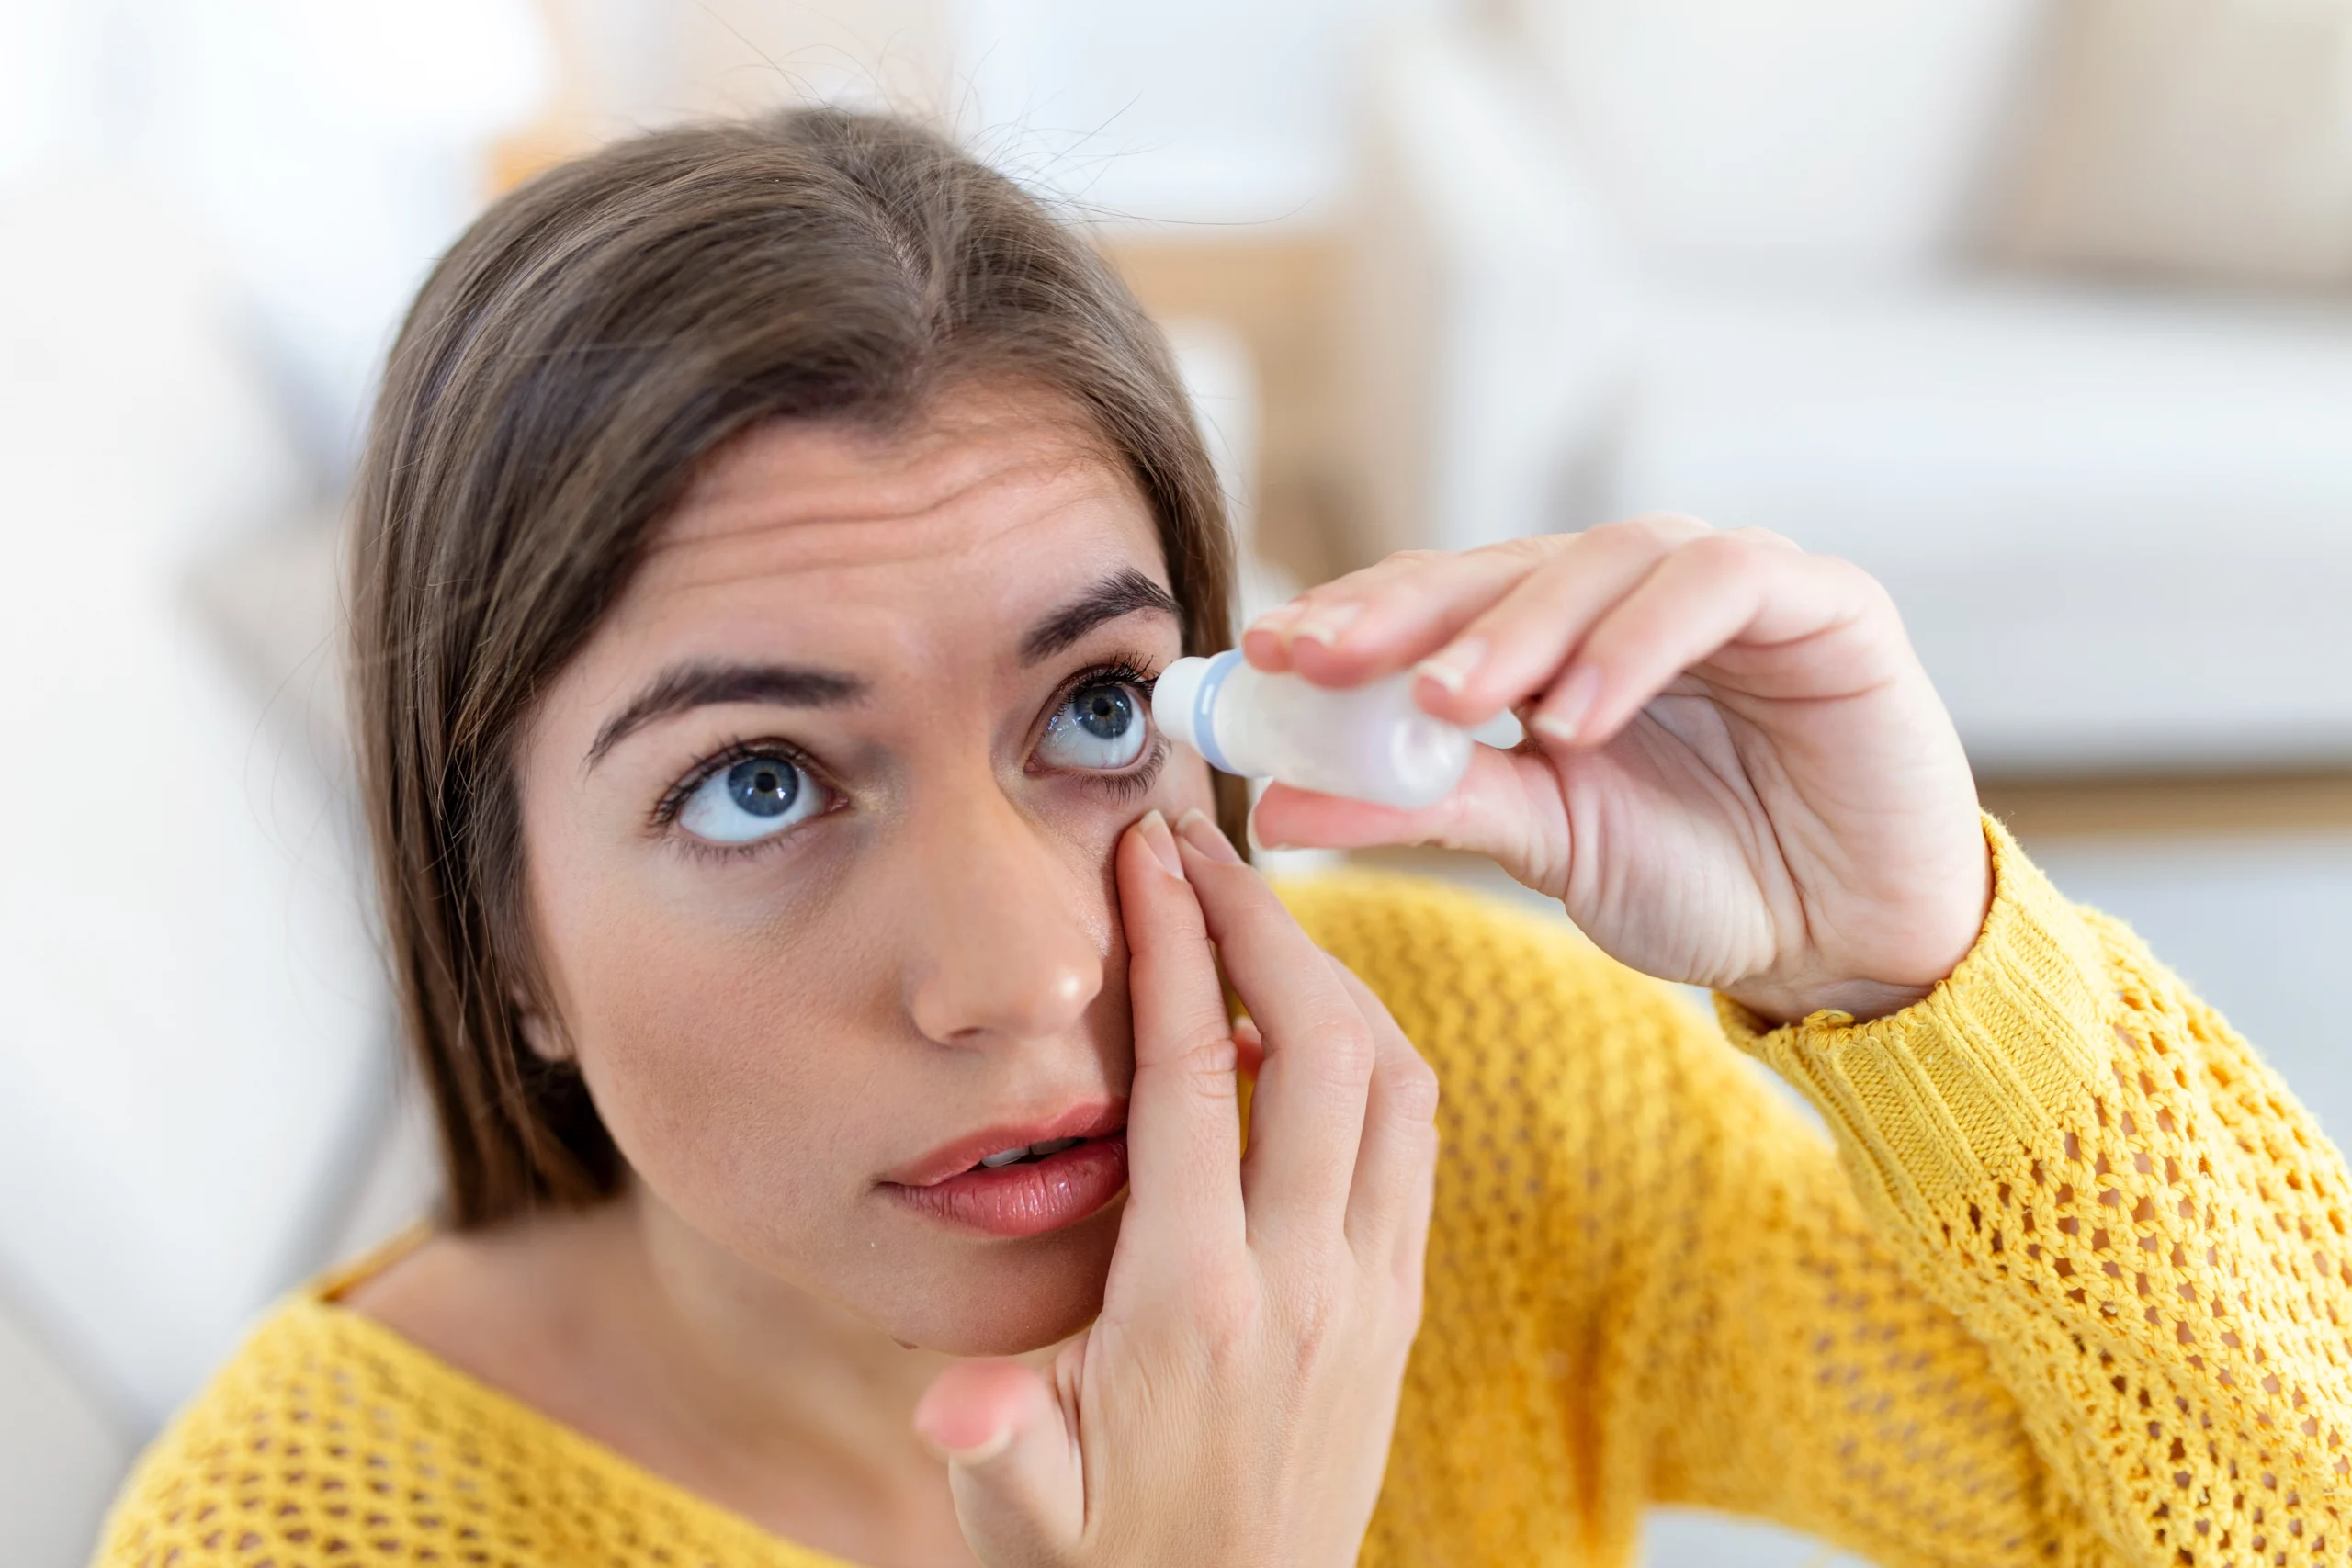 szemcsepp - műkönny - szemszárazság - kötőhártya gyulladás - szembetegség - allergia - szem betegségei